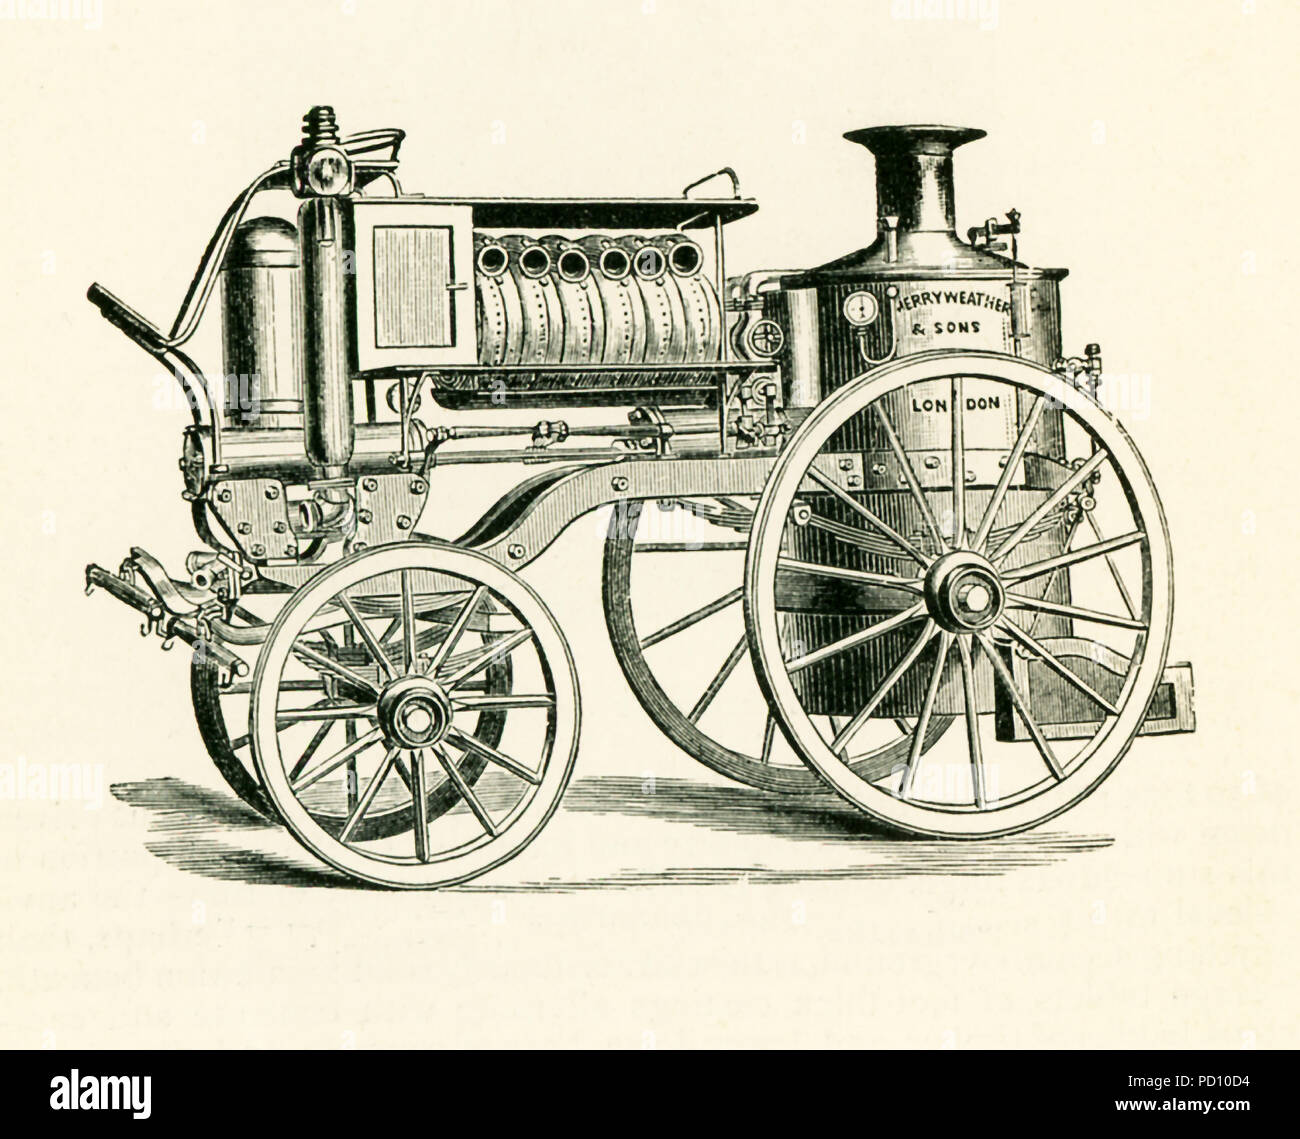 Diese Abbildung stammt aus dem Jahr 1870 und zeigt Merryweather's Dampf Fire Engine. Merryweather & Söhne war ein 1800 die Kanzlei in der Clapham (später Greenwich)" in London, dass Dampf Feuer Motoren und Dampf tram Motoren produziert. Sie hatten vertikale Kessel (wie hier dargestellt), dass sie auf eine Plattform, die von Pferden gezogen wurde. Es verbessert Feuer Druck - ideal für die Bekämpfung von Bränden. Stockfoto